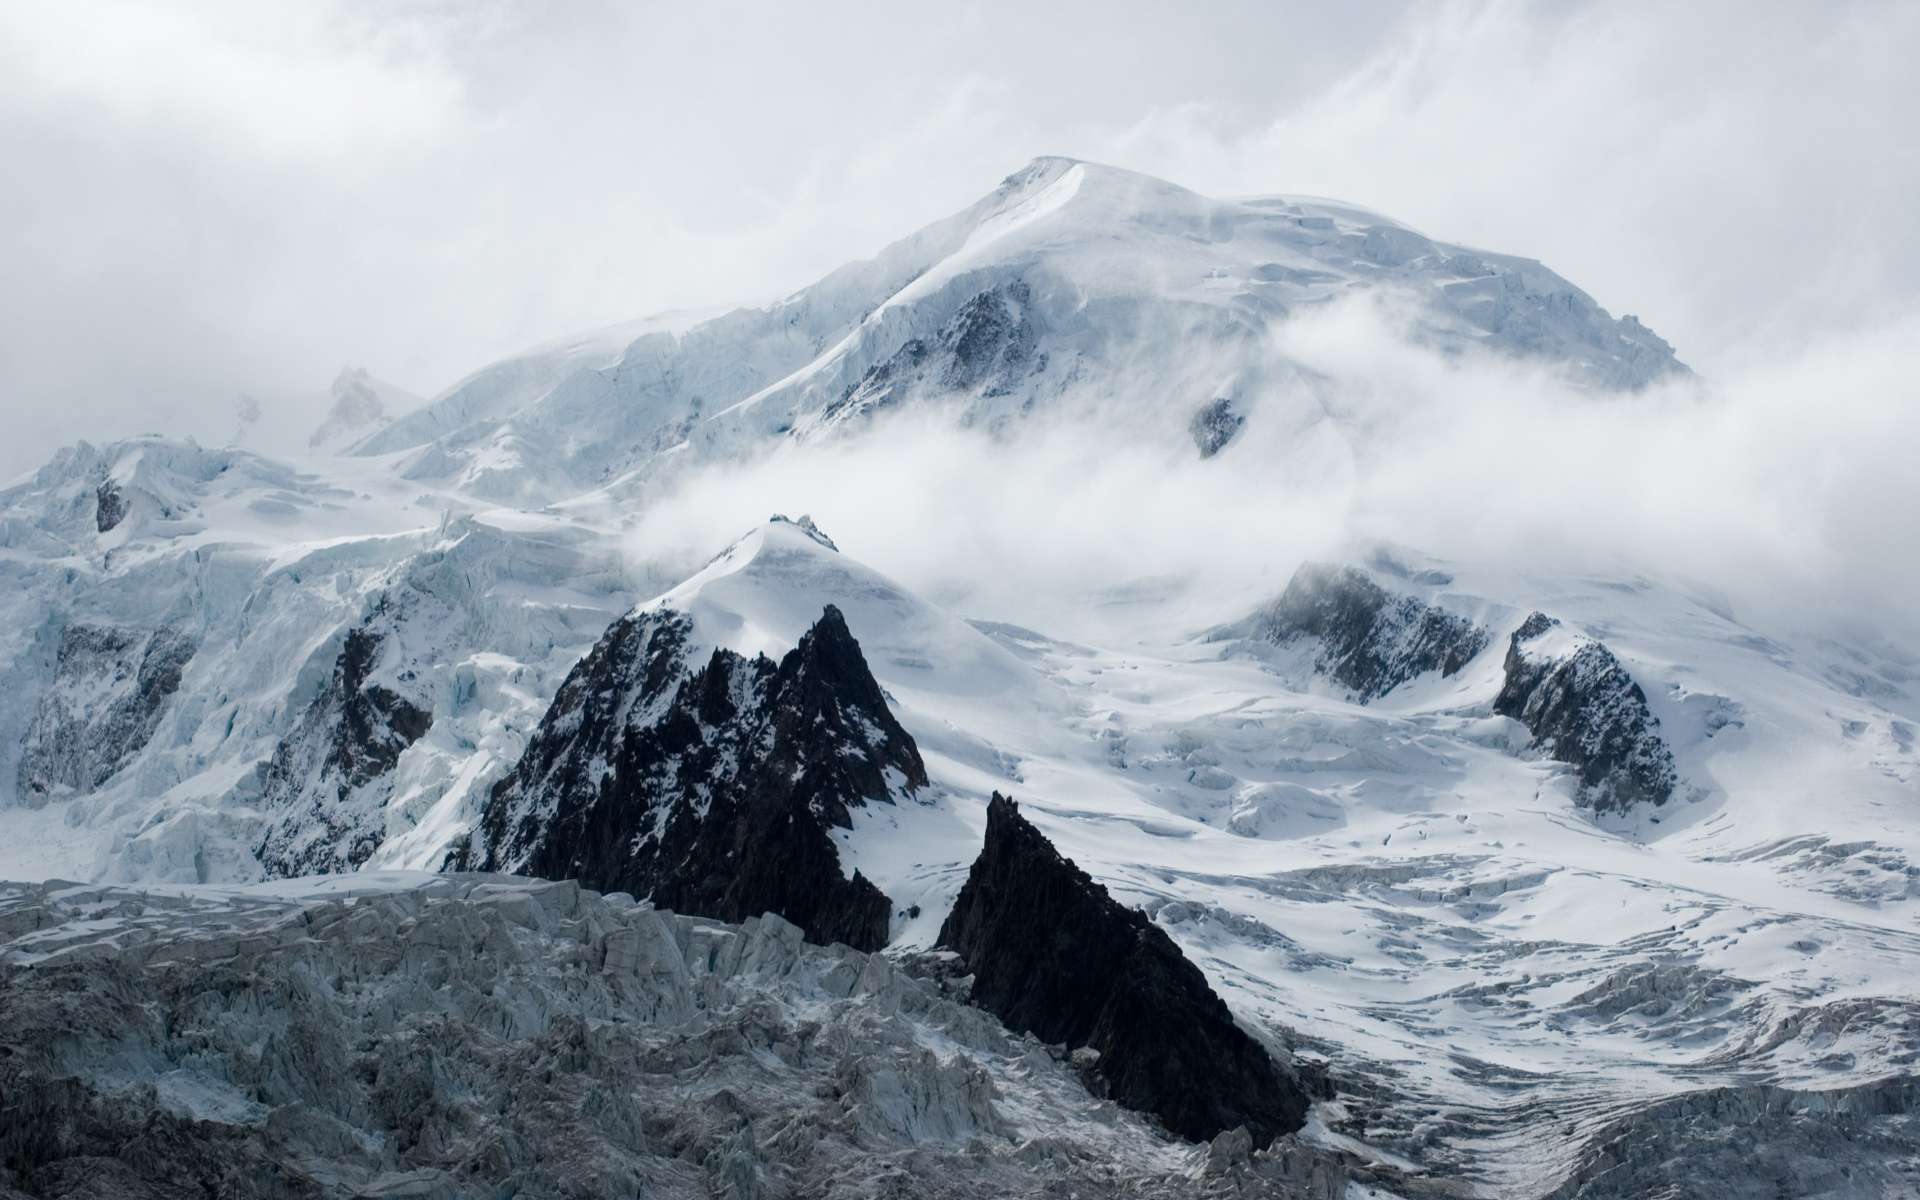 La pollution de l’Antiquité romaine retrouvée dans les glaces du Mont-Blanc